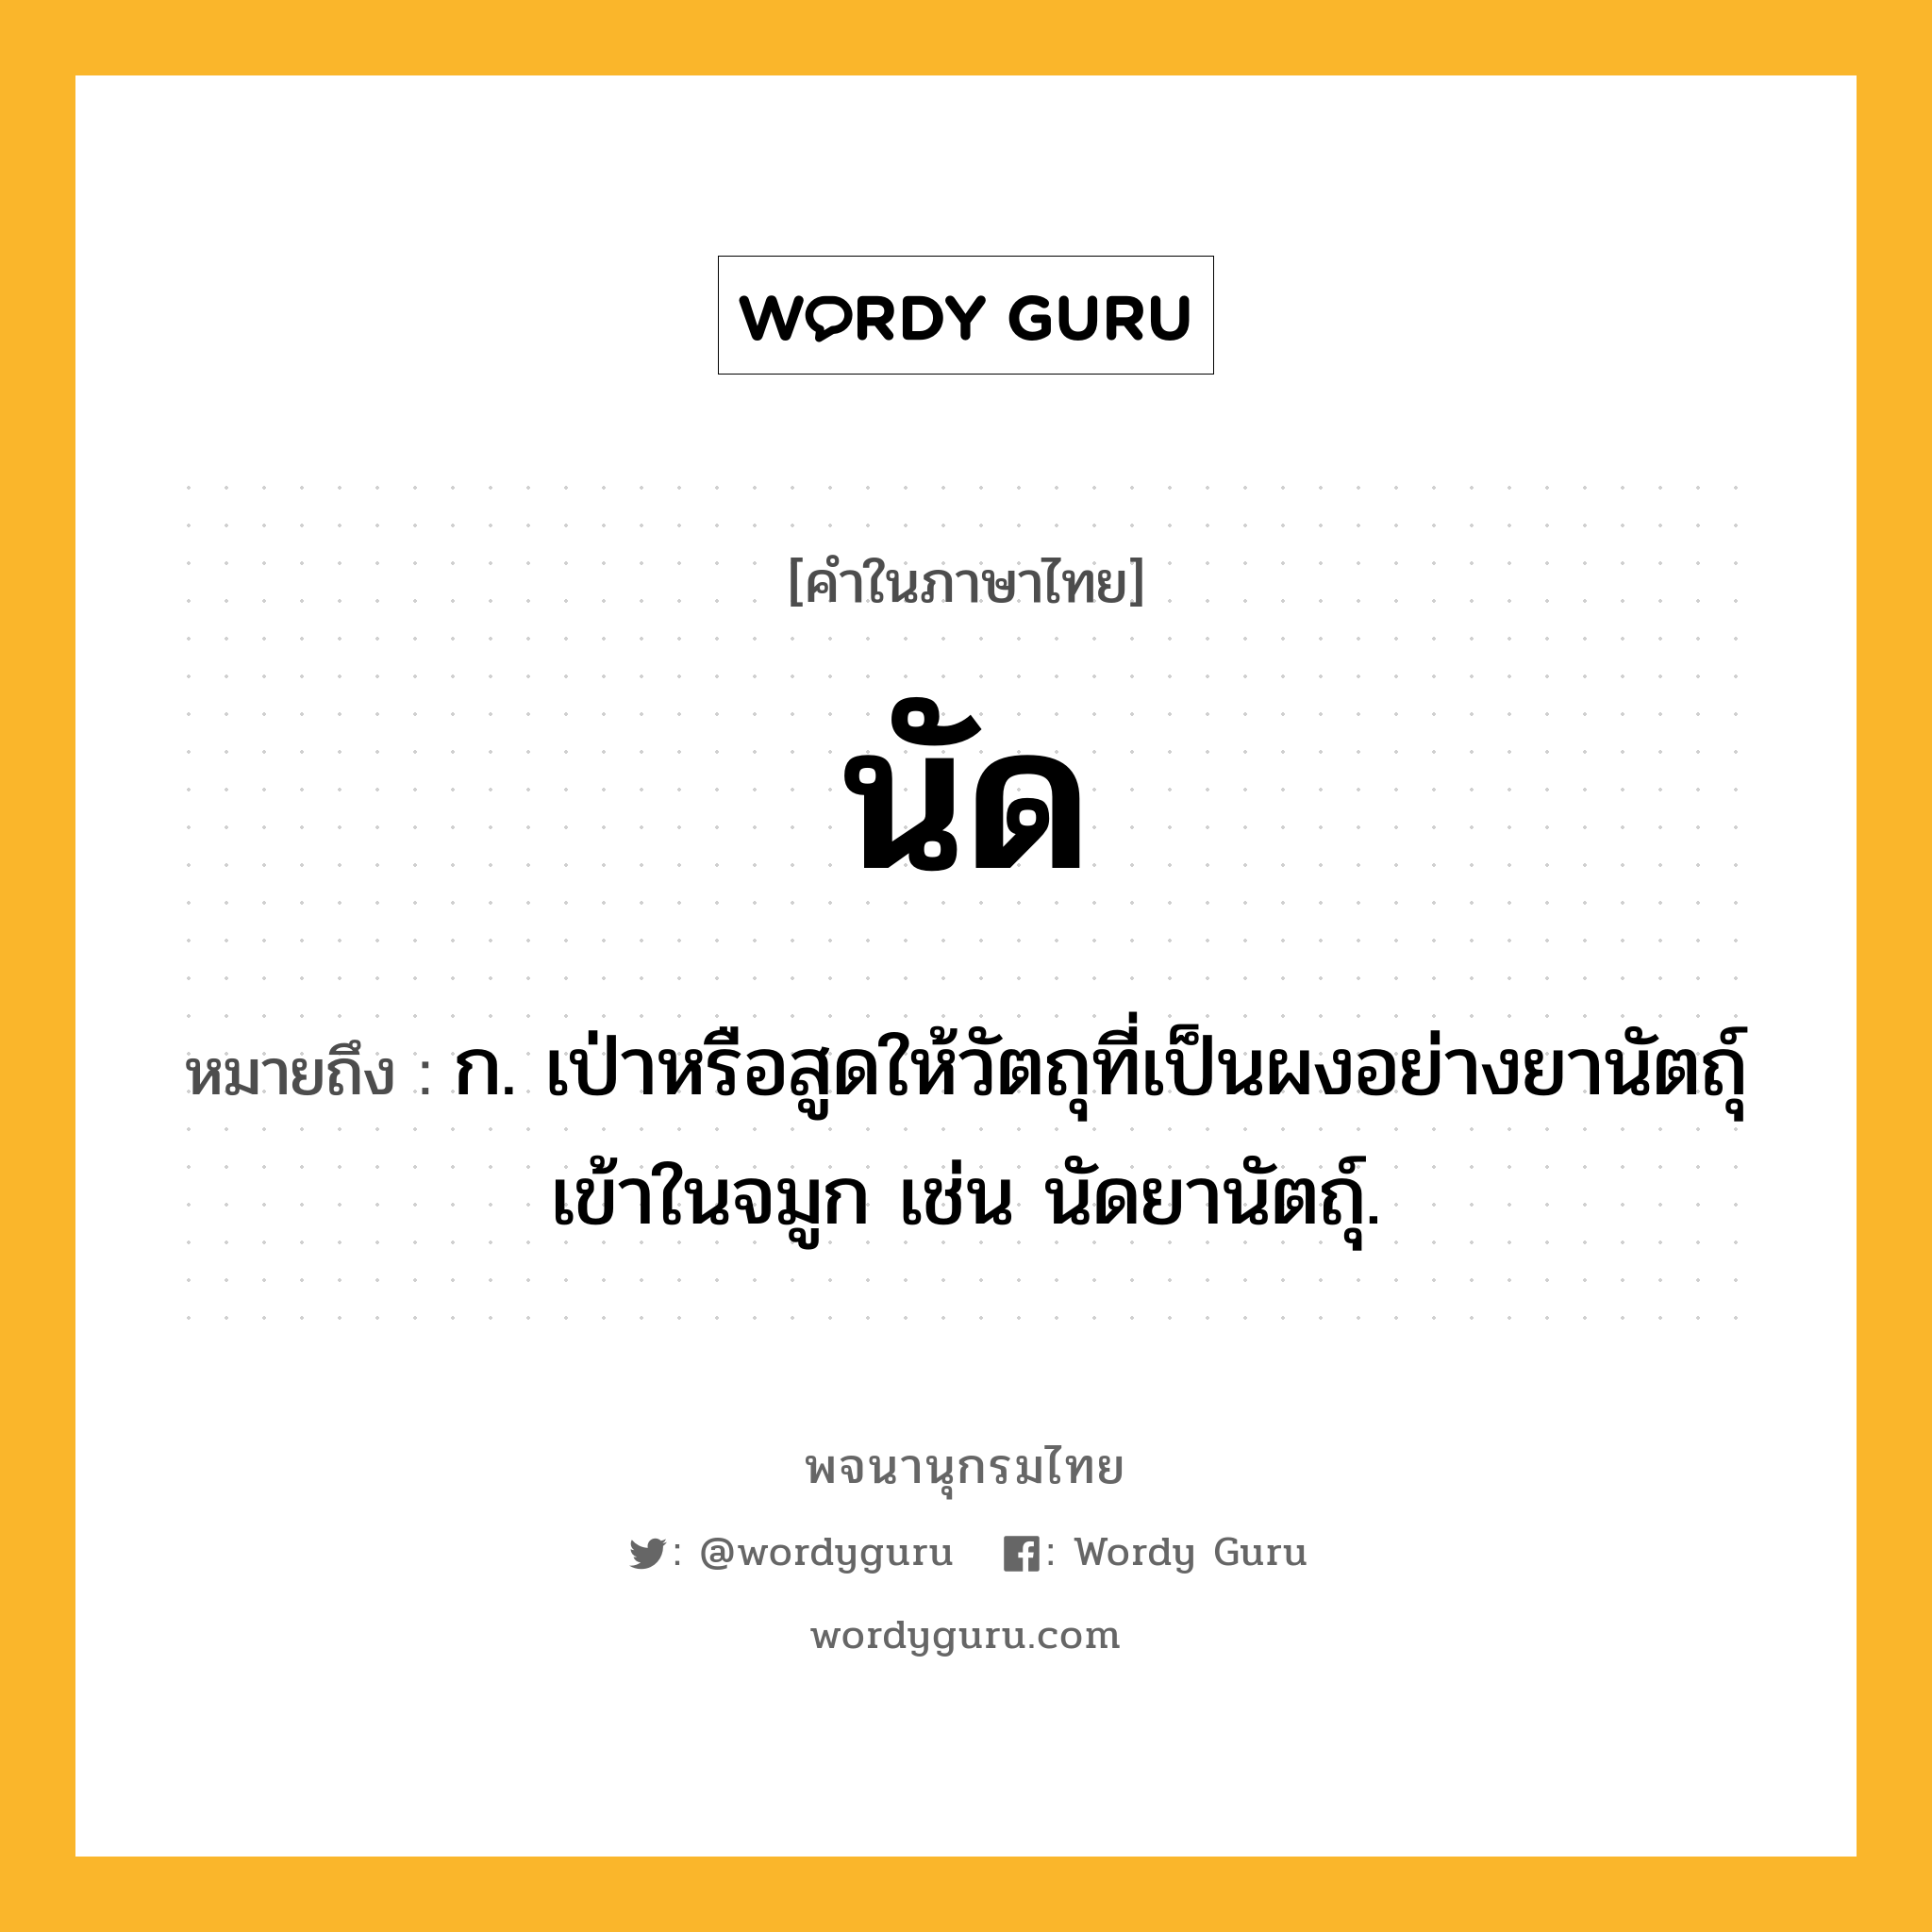 นัด ความหมาย หมายถึงอะไร?, คำในภาษาไทย นัด หมายถึง ก. เป่าหรือสูดให้วัตถุที่เป็นผงอย่างยานัตถุ์เข้าในจมูก เช่น นัดยานัตถุ์.